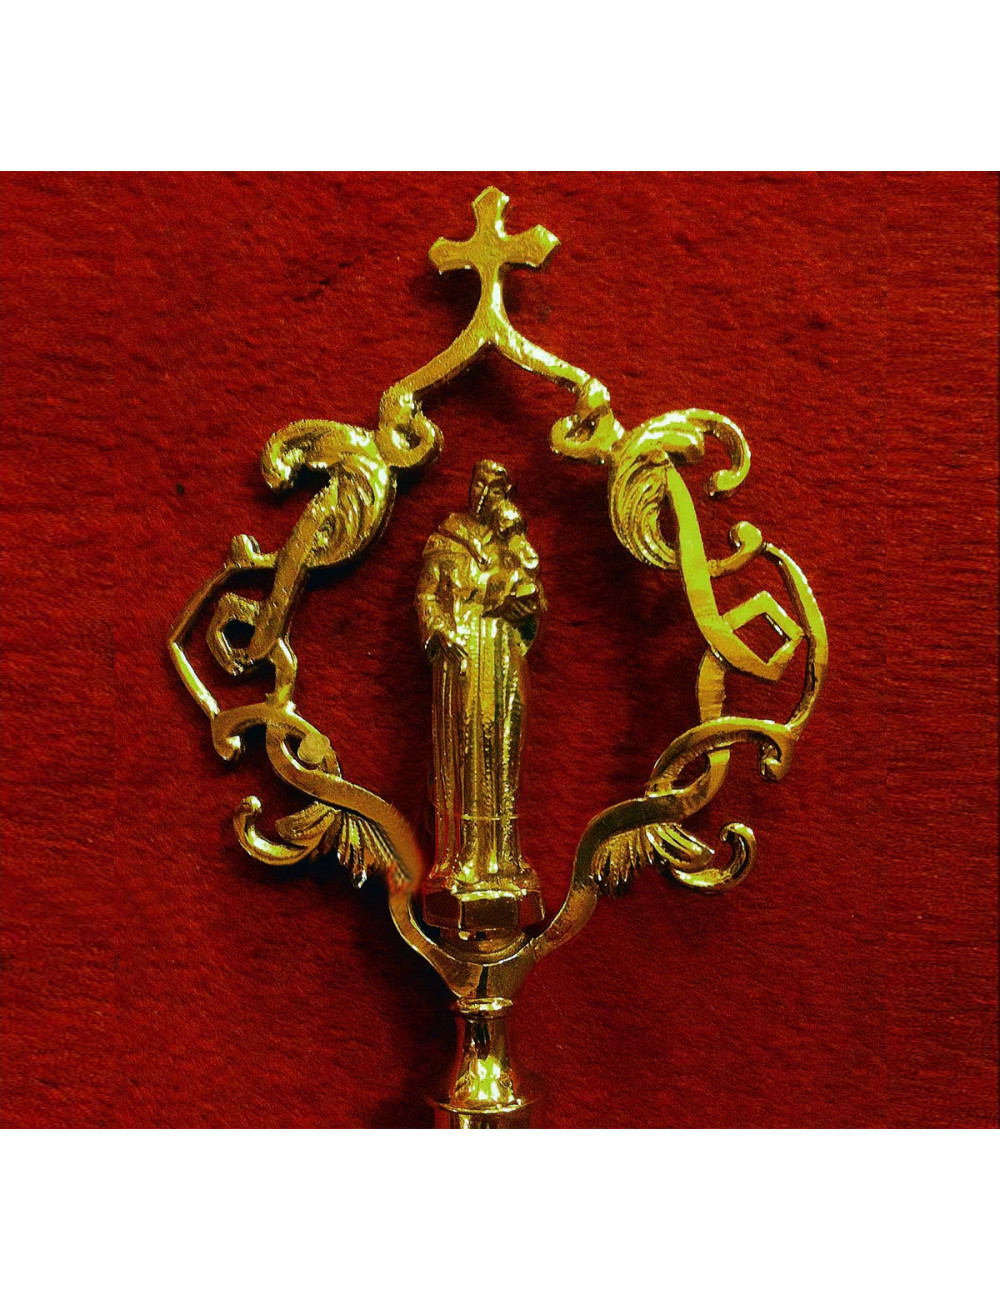 Scepter gold plated brass Saint